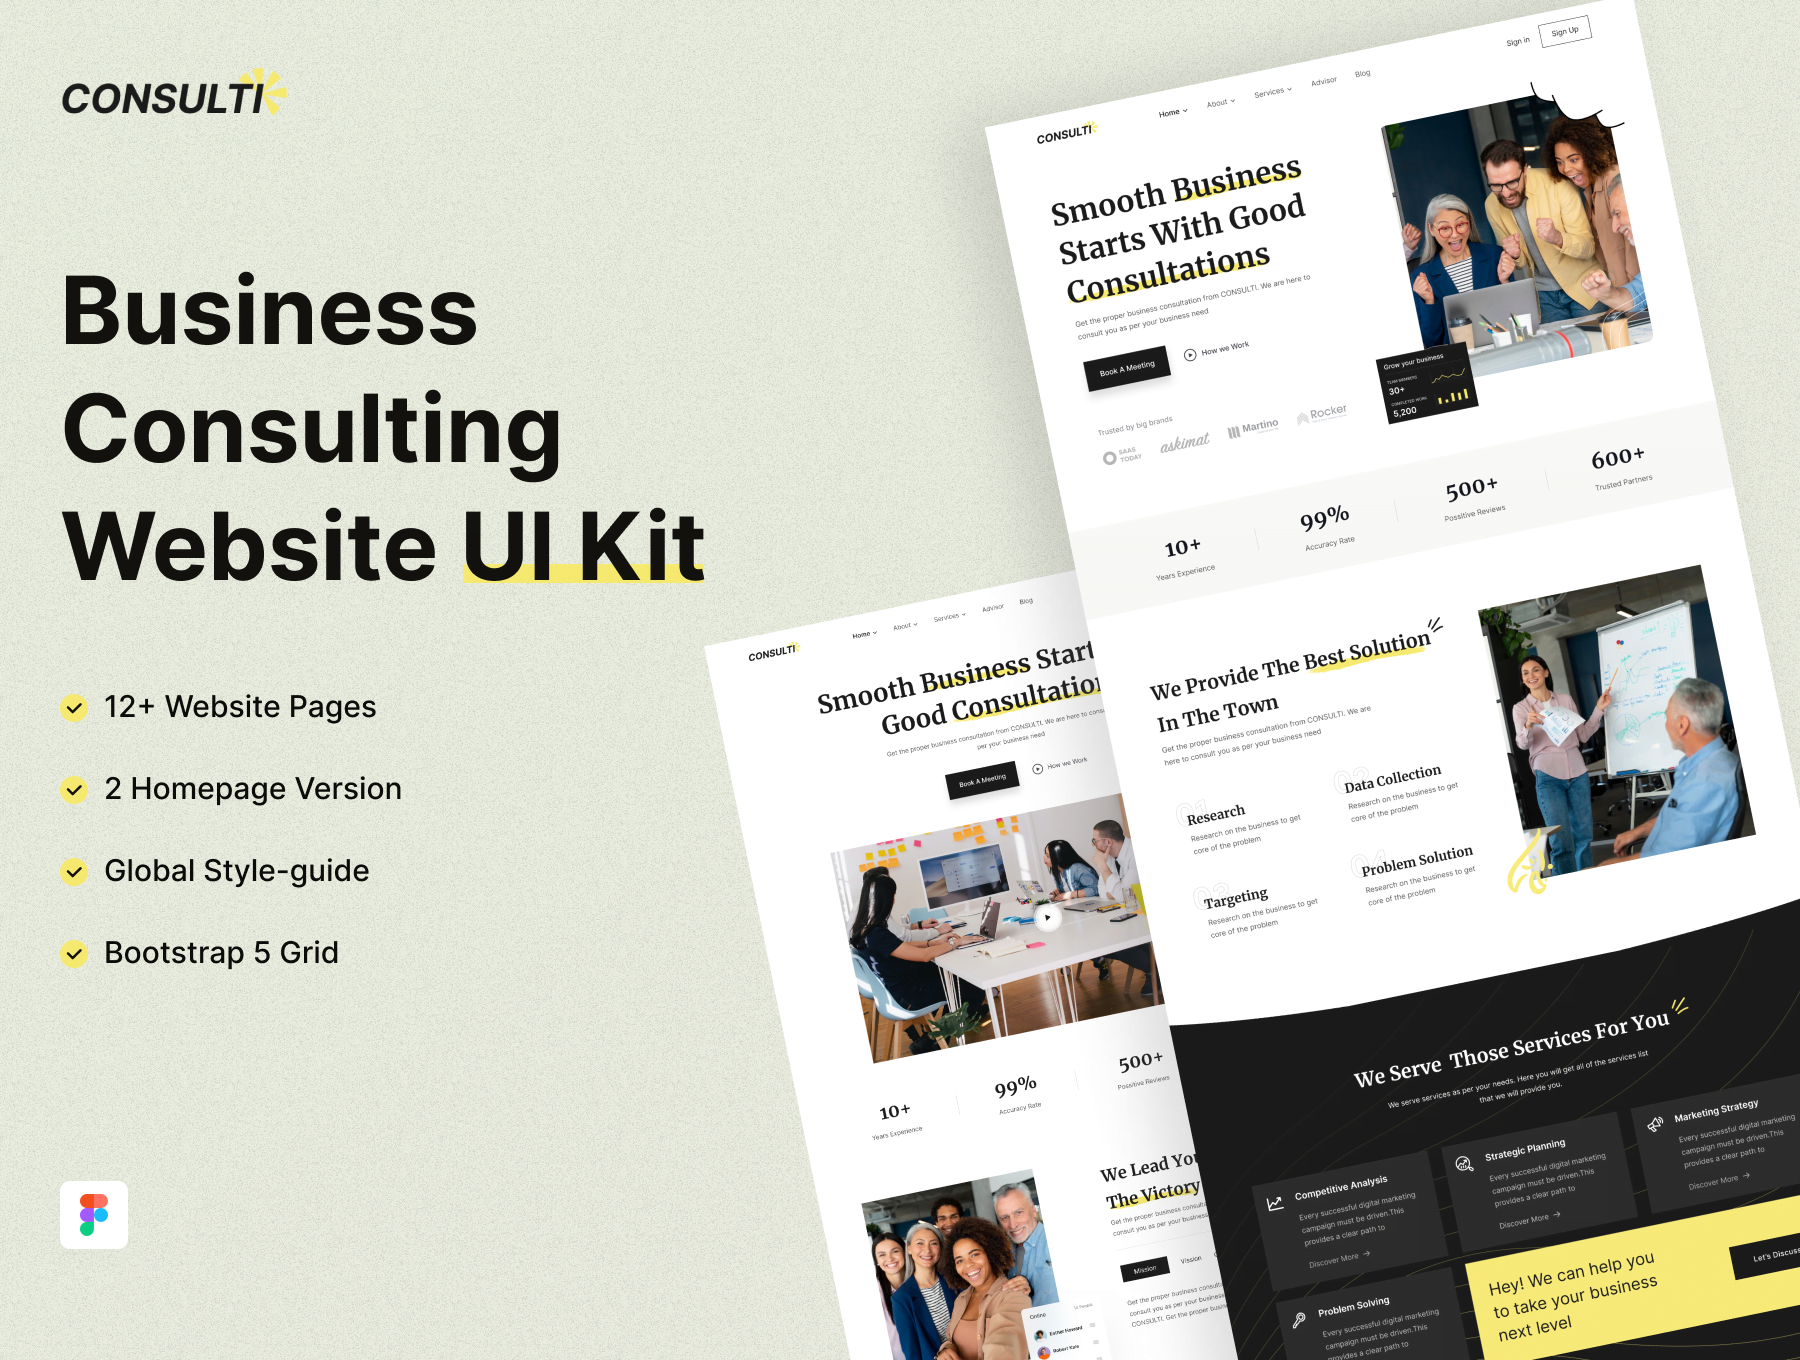 Consulti 商务咨询网站 UI 套件 Consulti - Business Consulting Website UI Kit-UI/UX-到位啦UI